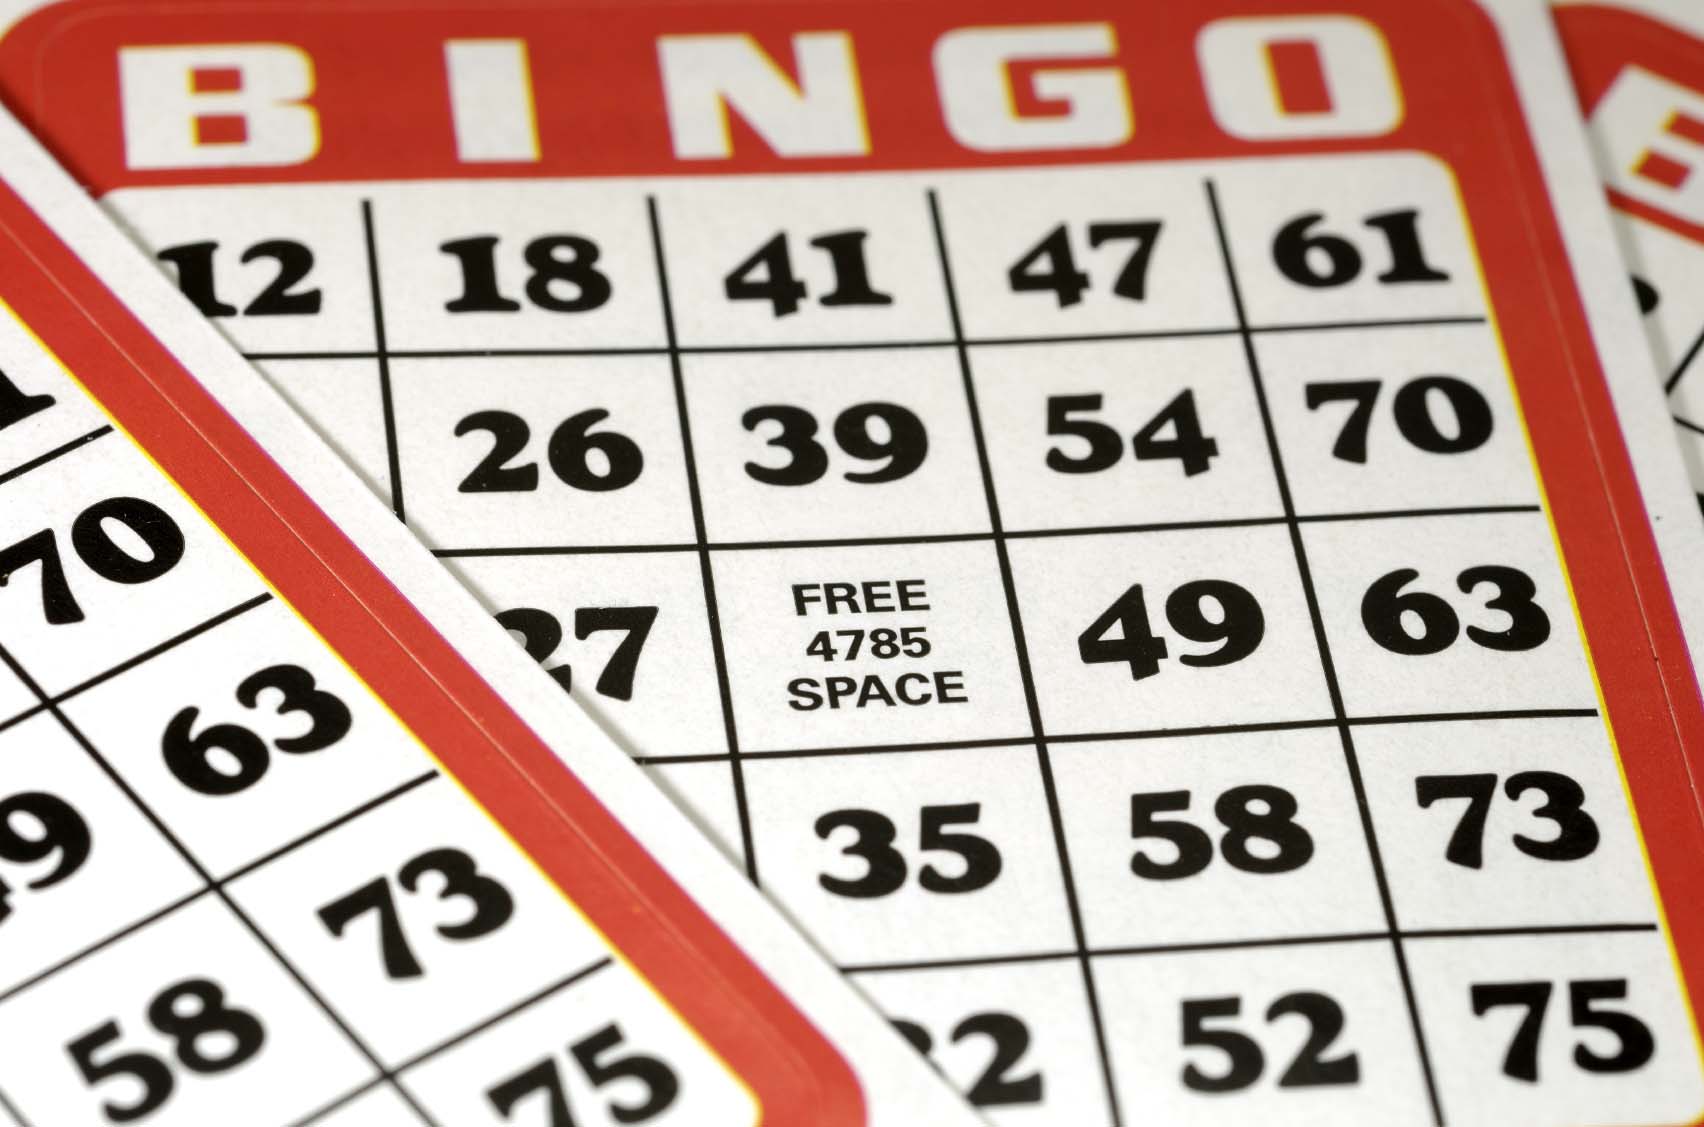 El pozo acumulado del bingo municipal llegó al millón de pesos